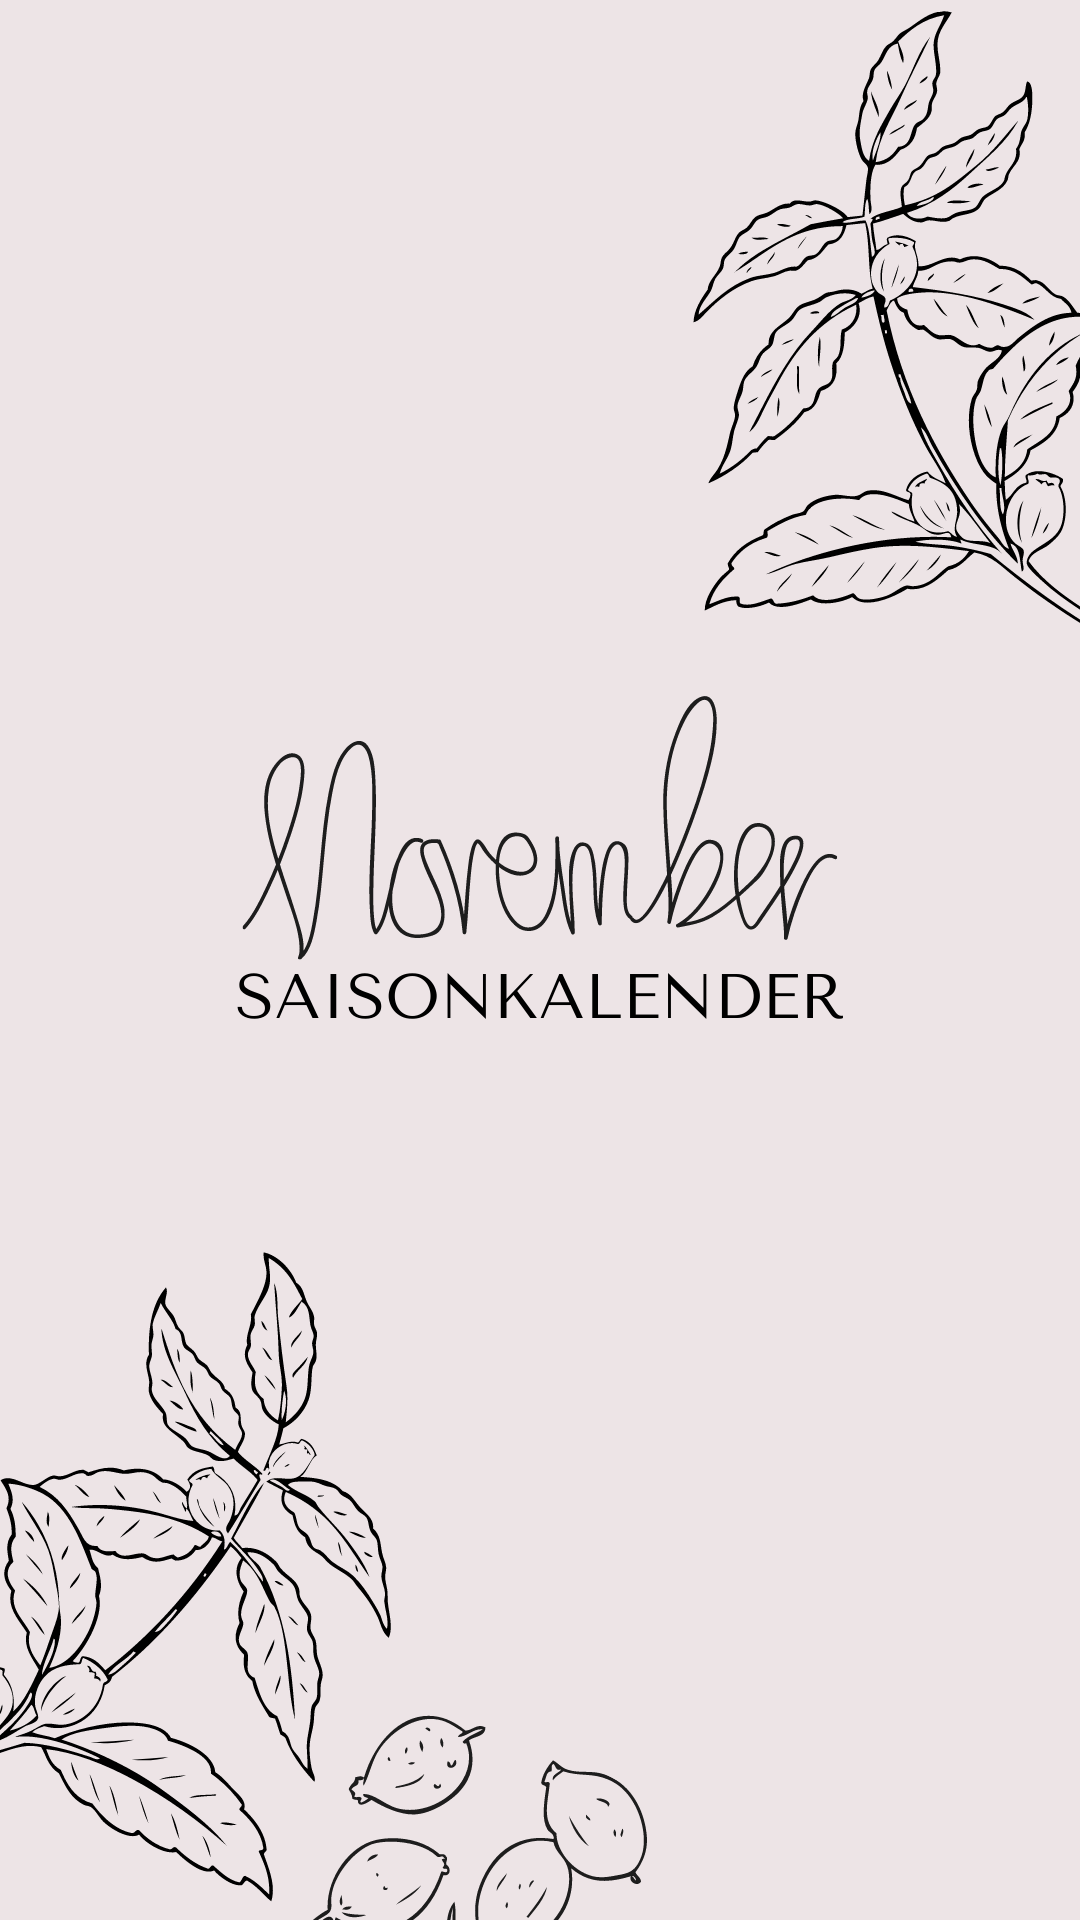 Saisonkalender November